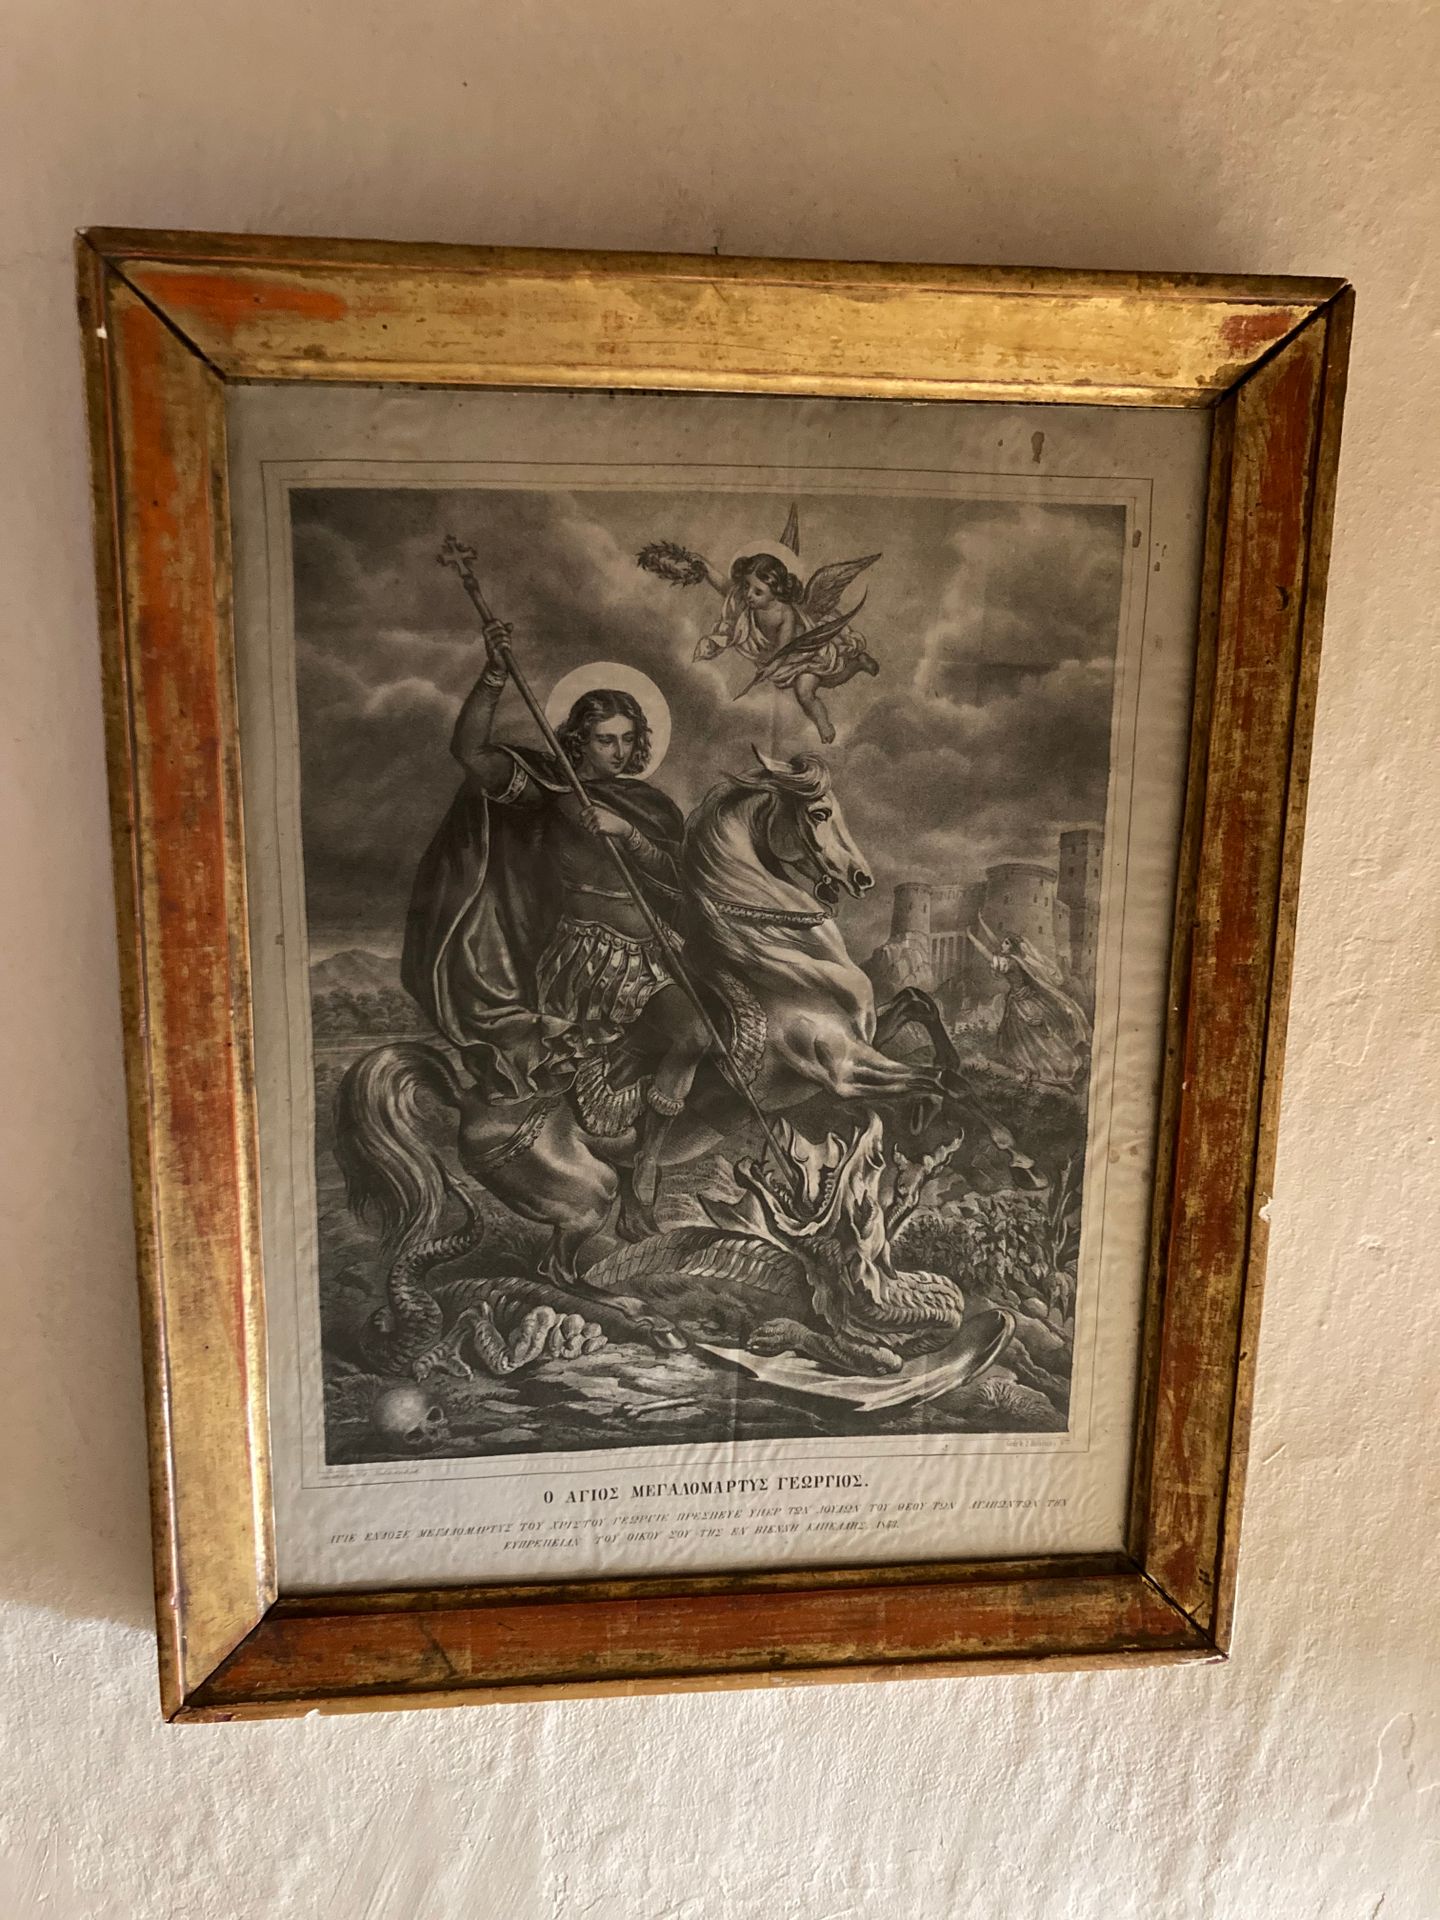 Null escuela rusa. Siglo XIX
San Miguel matando al dragón
Grabado
43x33 cm